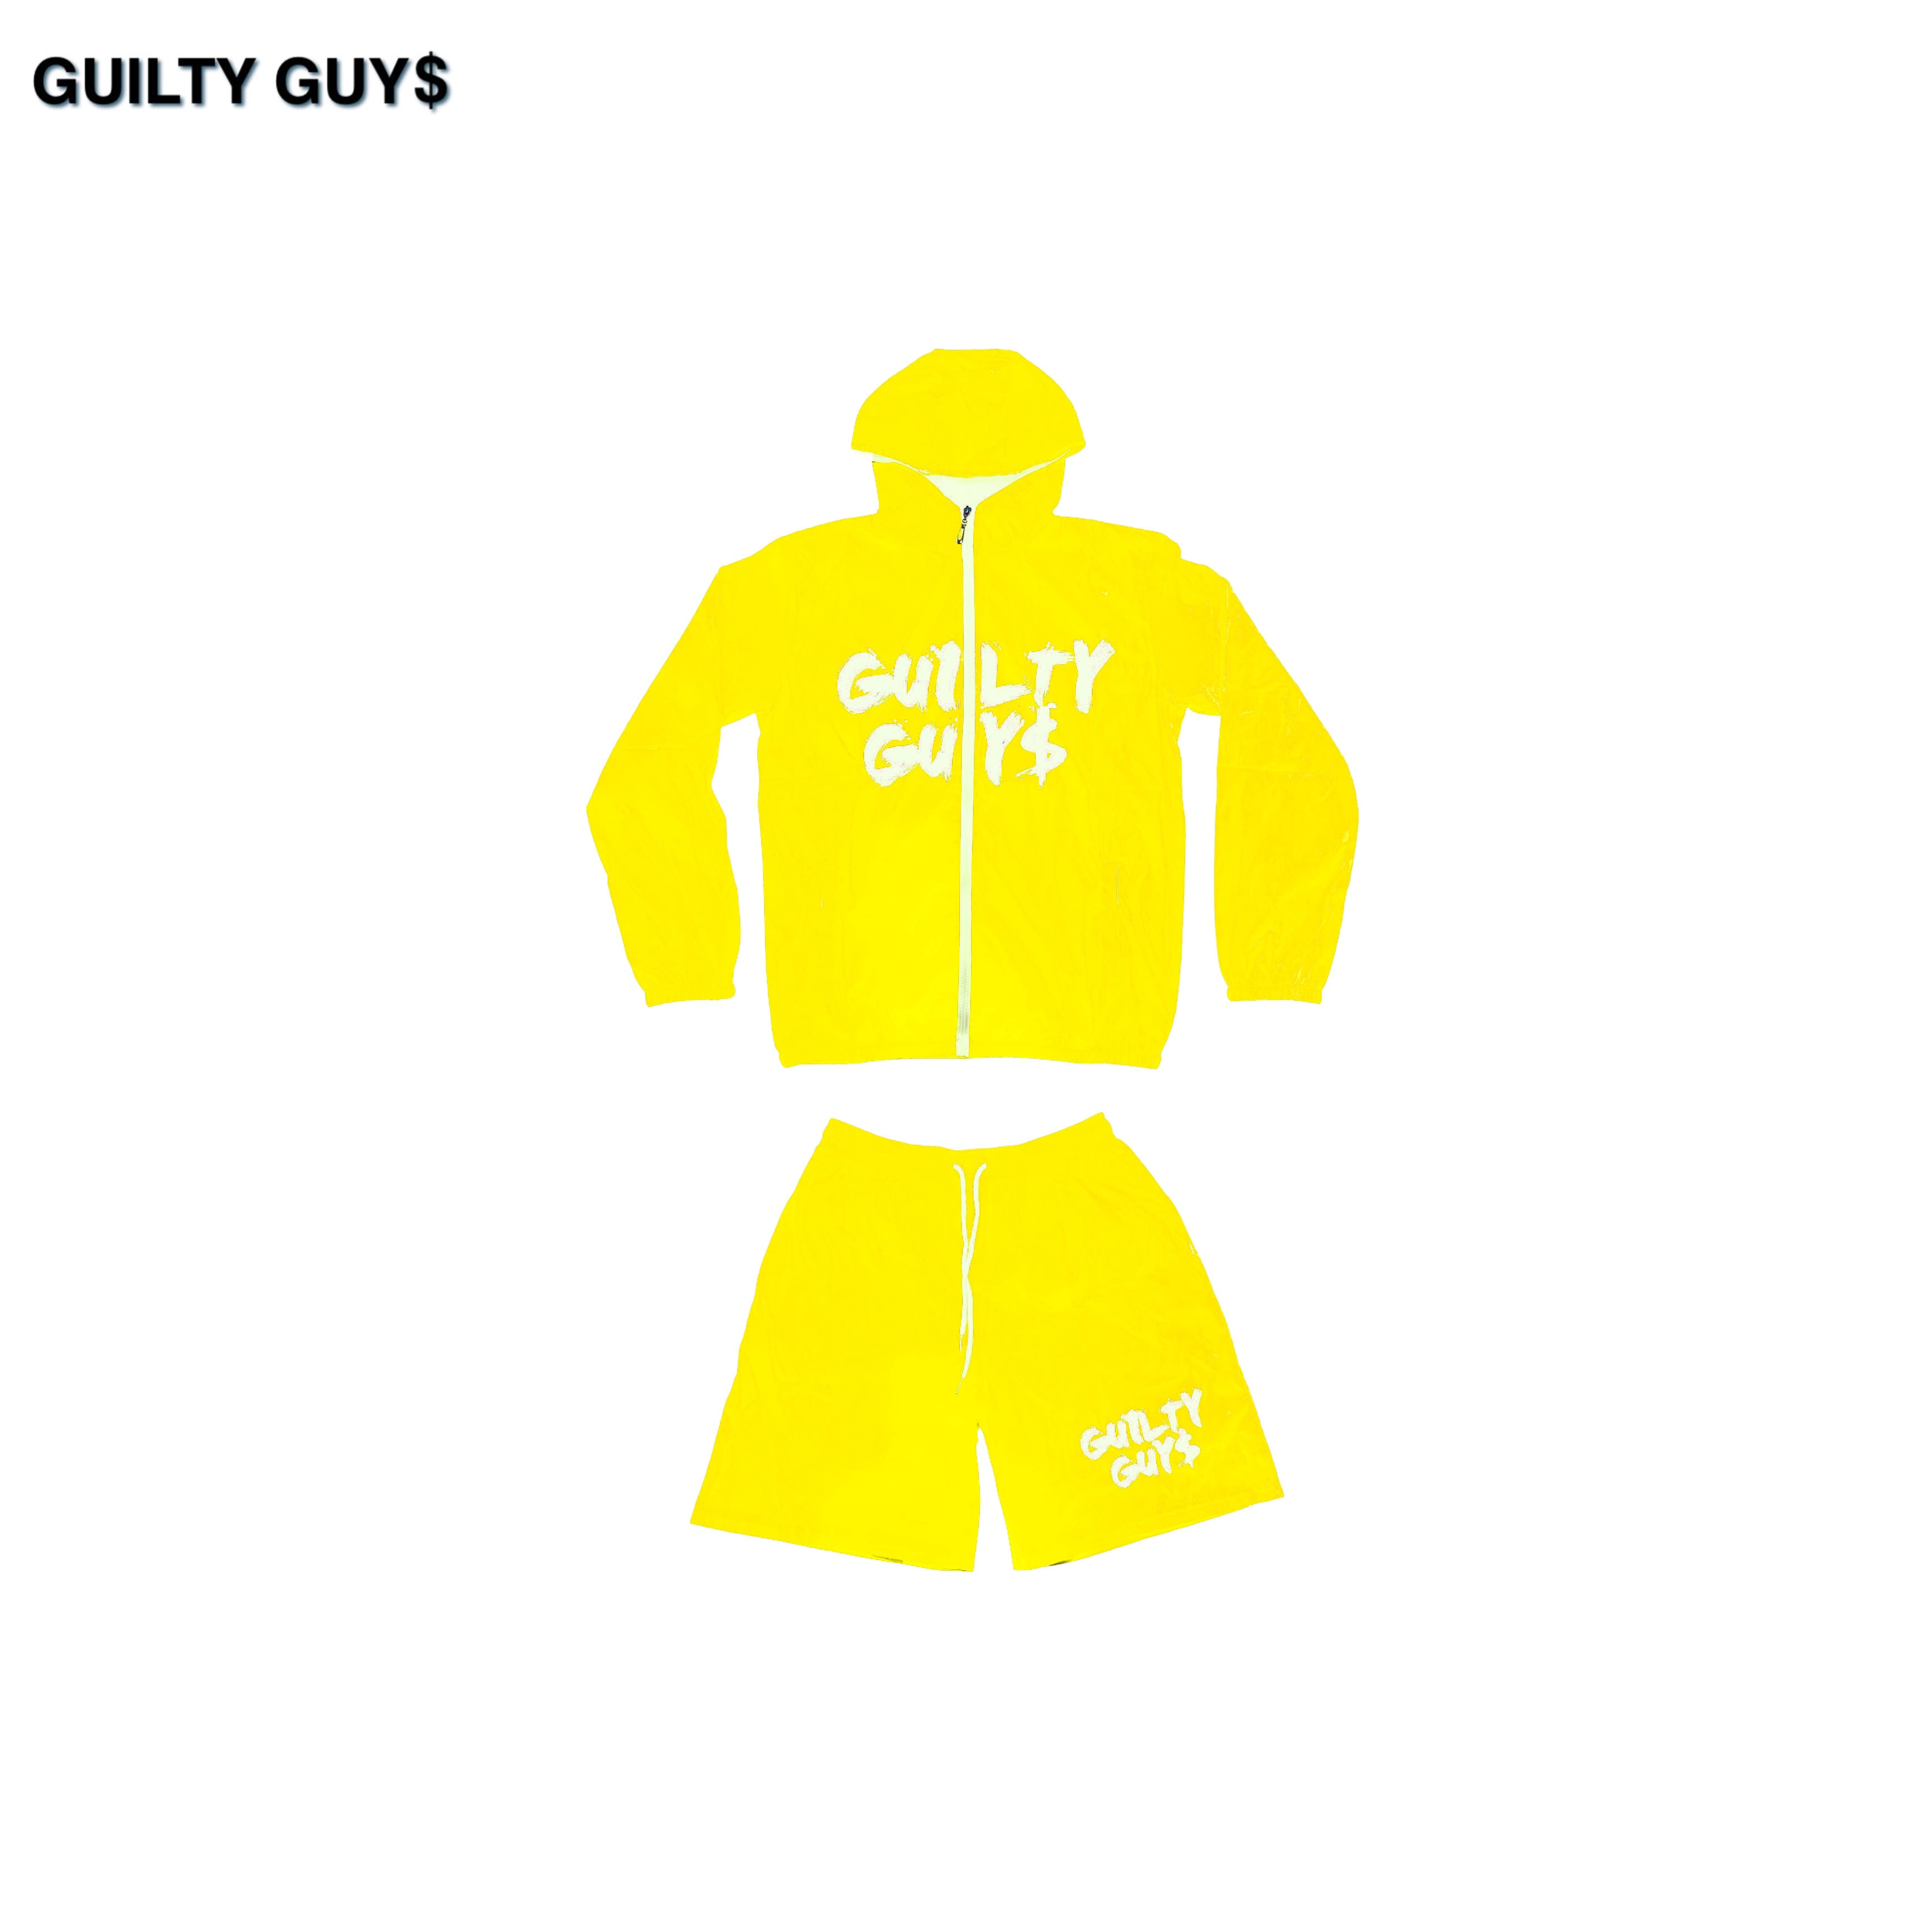 guilty guysのセットアップ | hartwellspremium.com